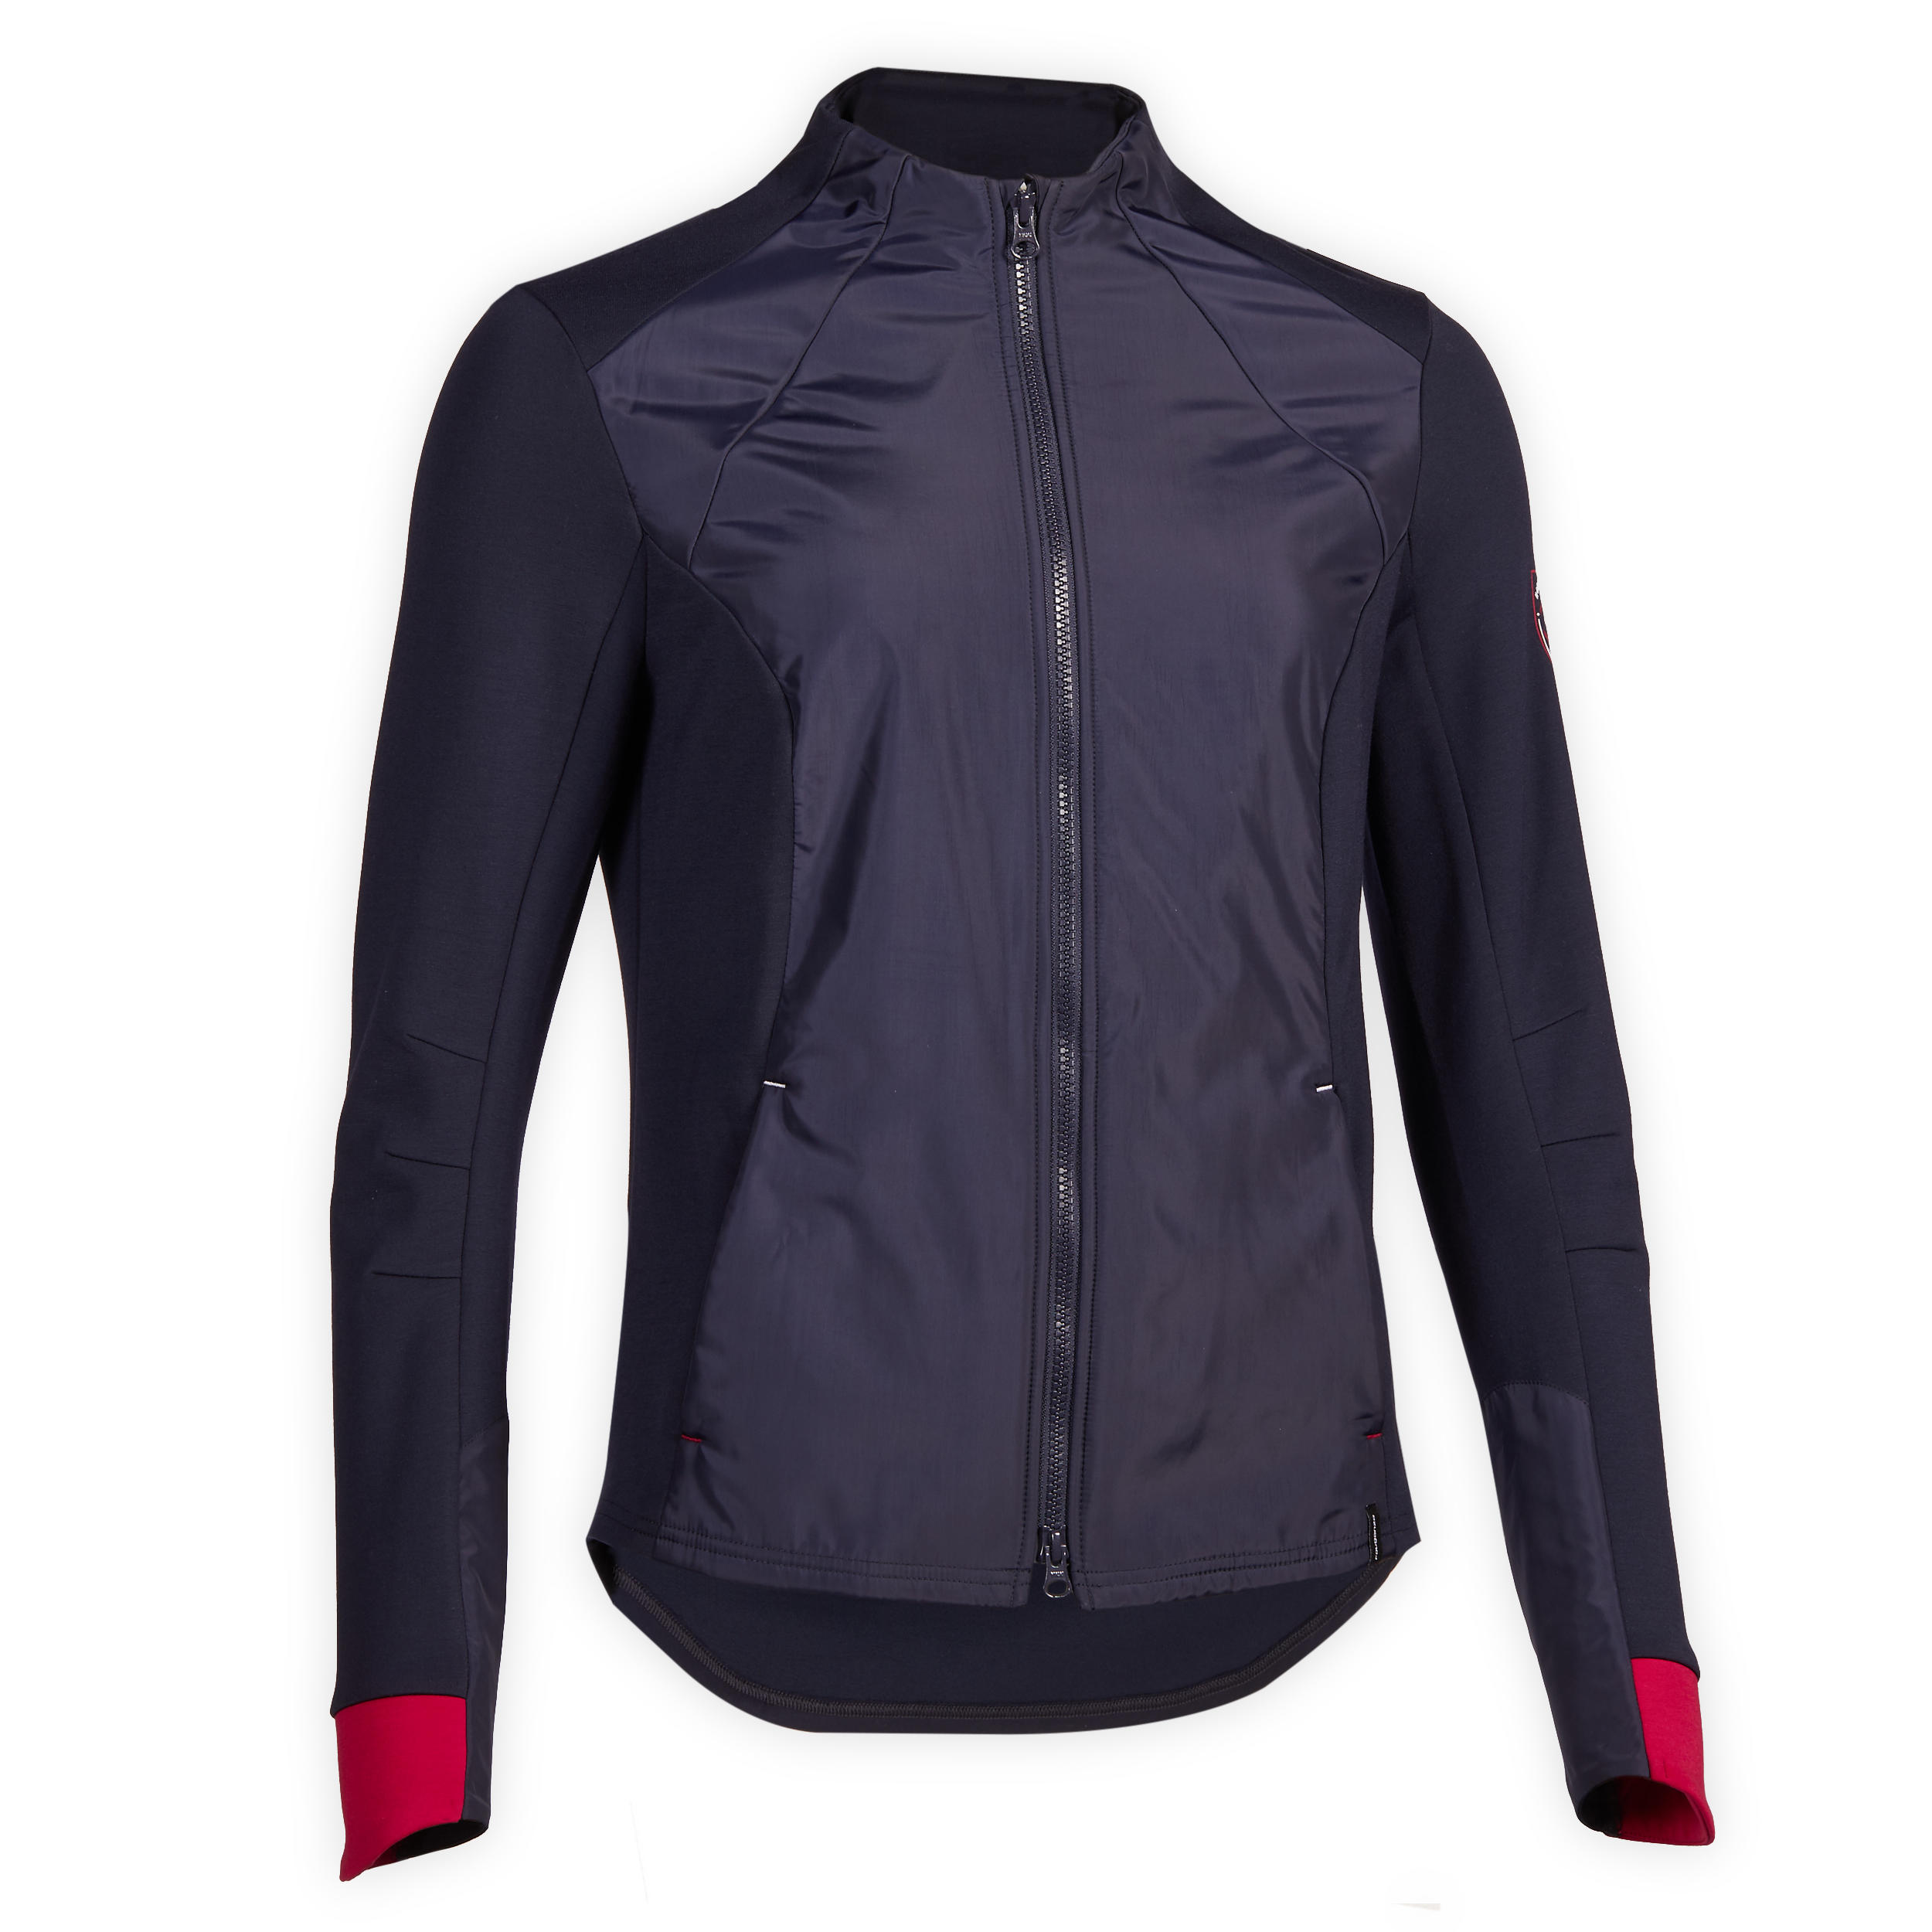 Jachetă echitaţie 500 bleumarin şi roşu damă La Oferta Online decathlon imagine La Oferta Online